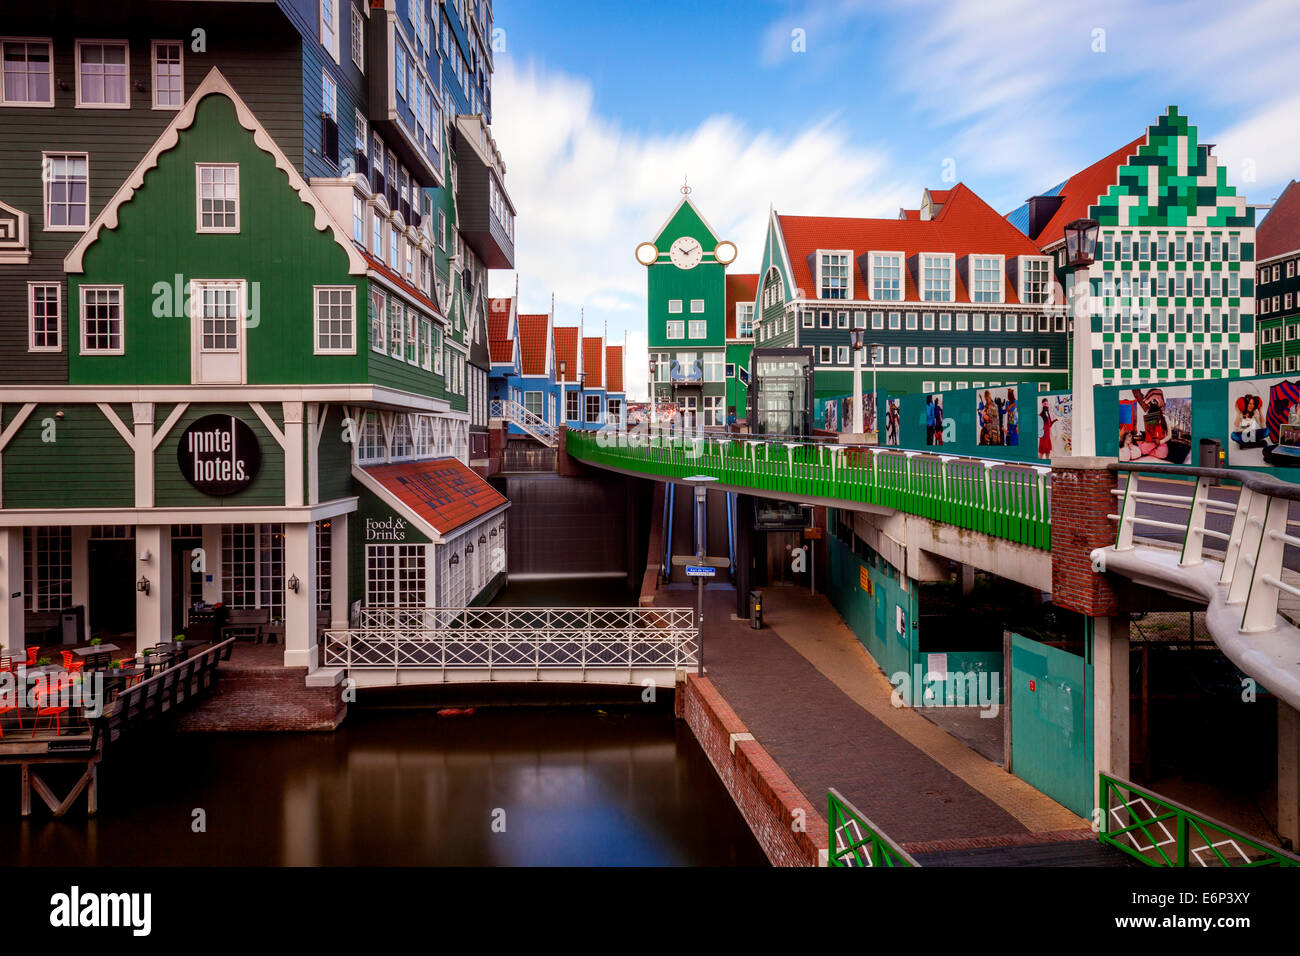 L'Inntel Hotel e gli edifici colorati, Zaandam, Amsterdam, Olanda Foto Stock